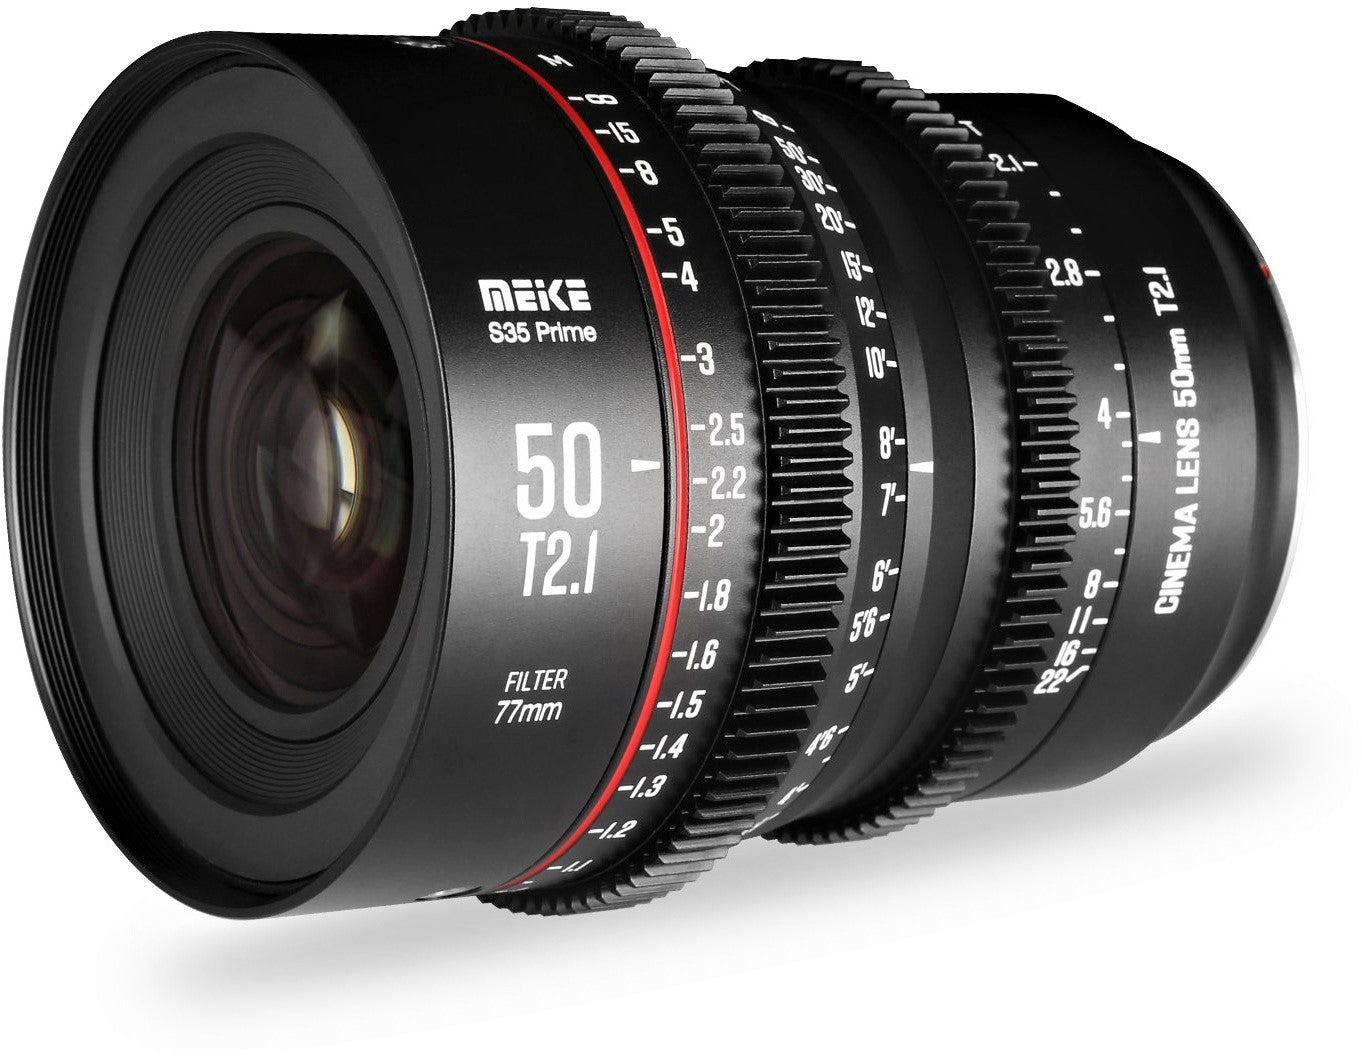 Meike 50mm T2.1 Super 35 Cine Prime Lens (PL Mount) in a Front-Side View